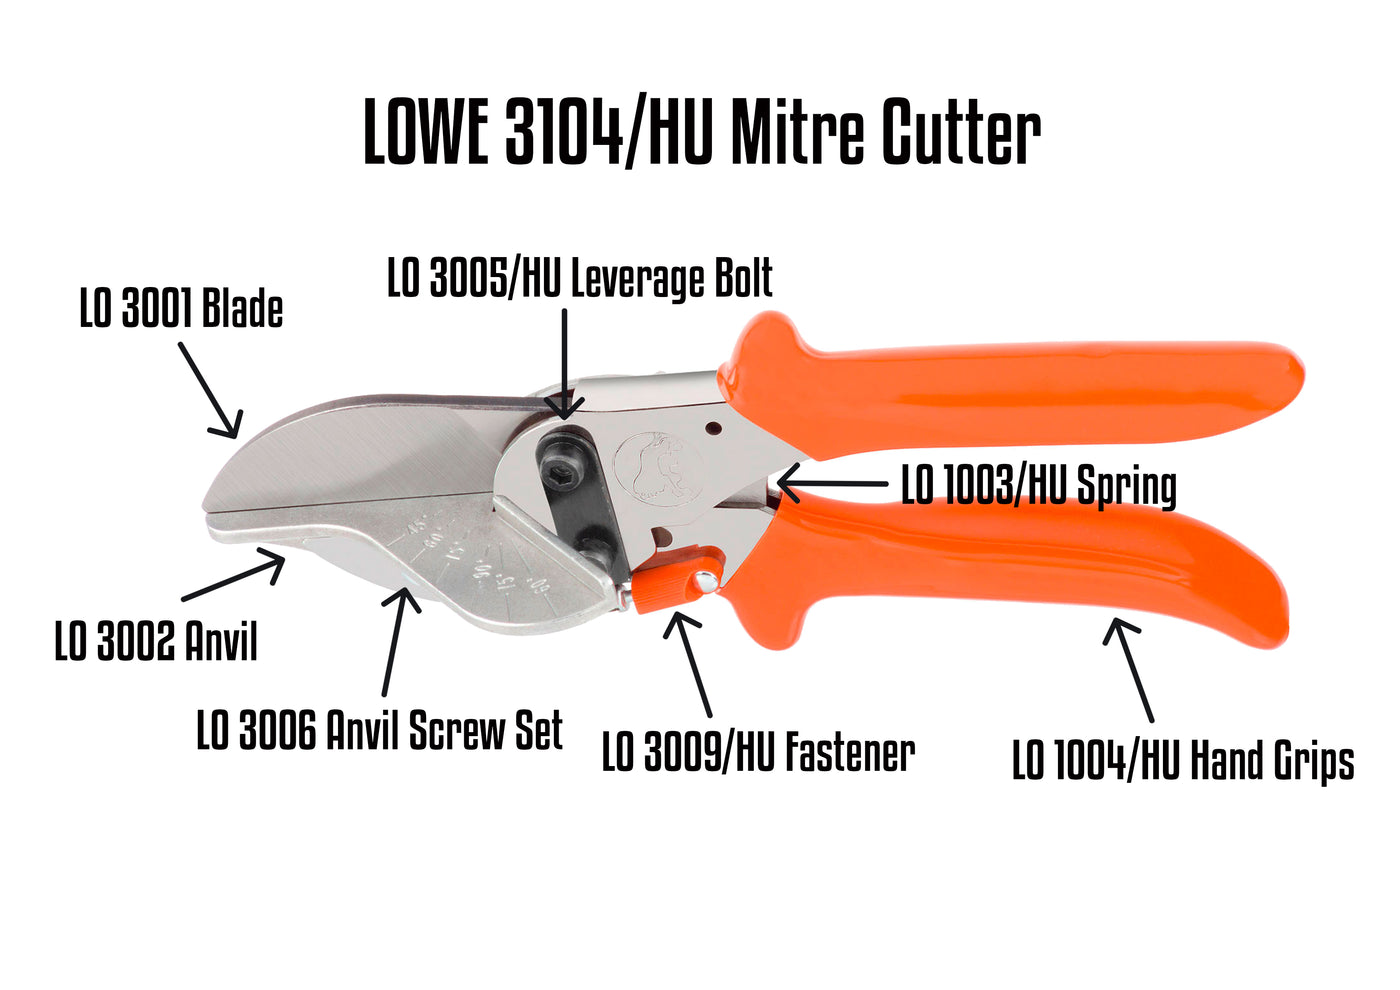 LO 3104/HU Mitre Cutter